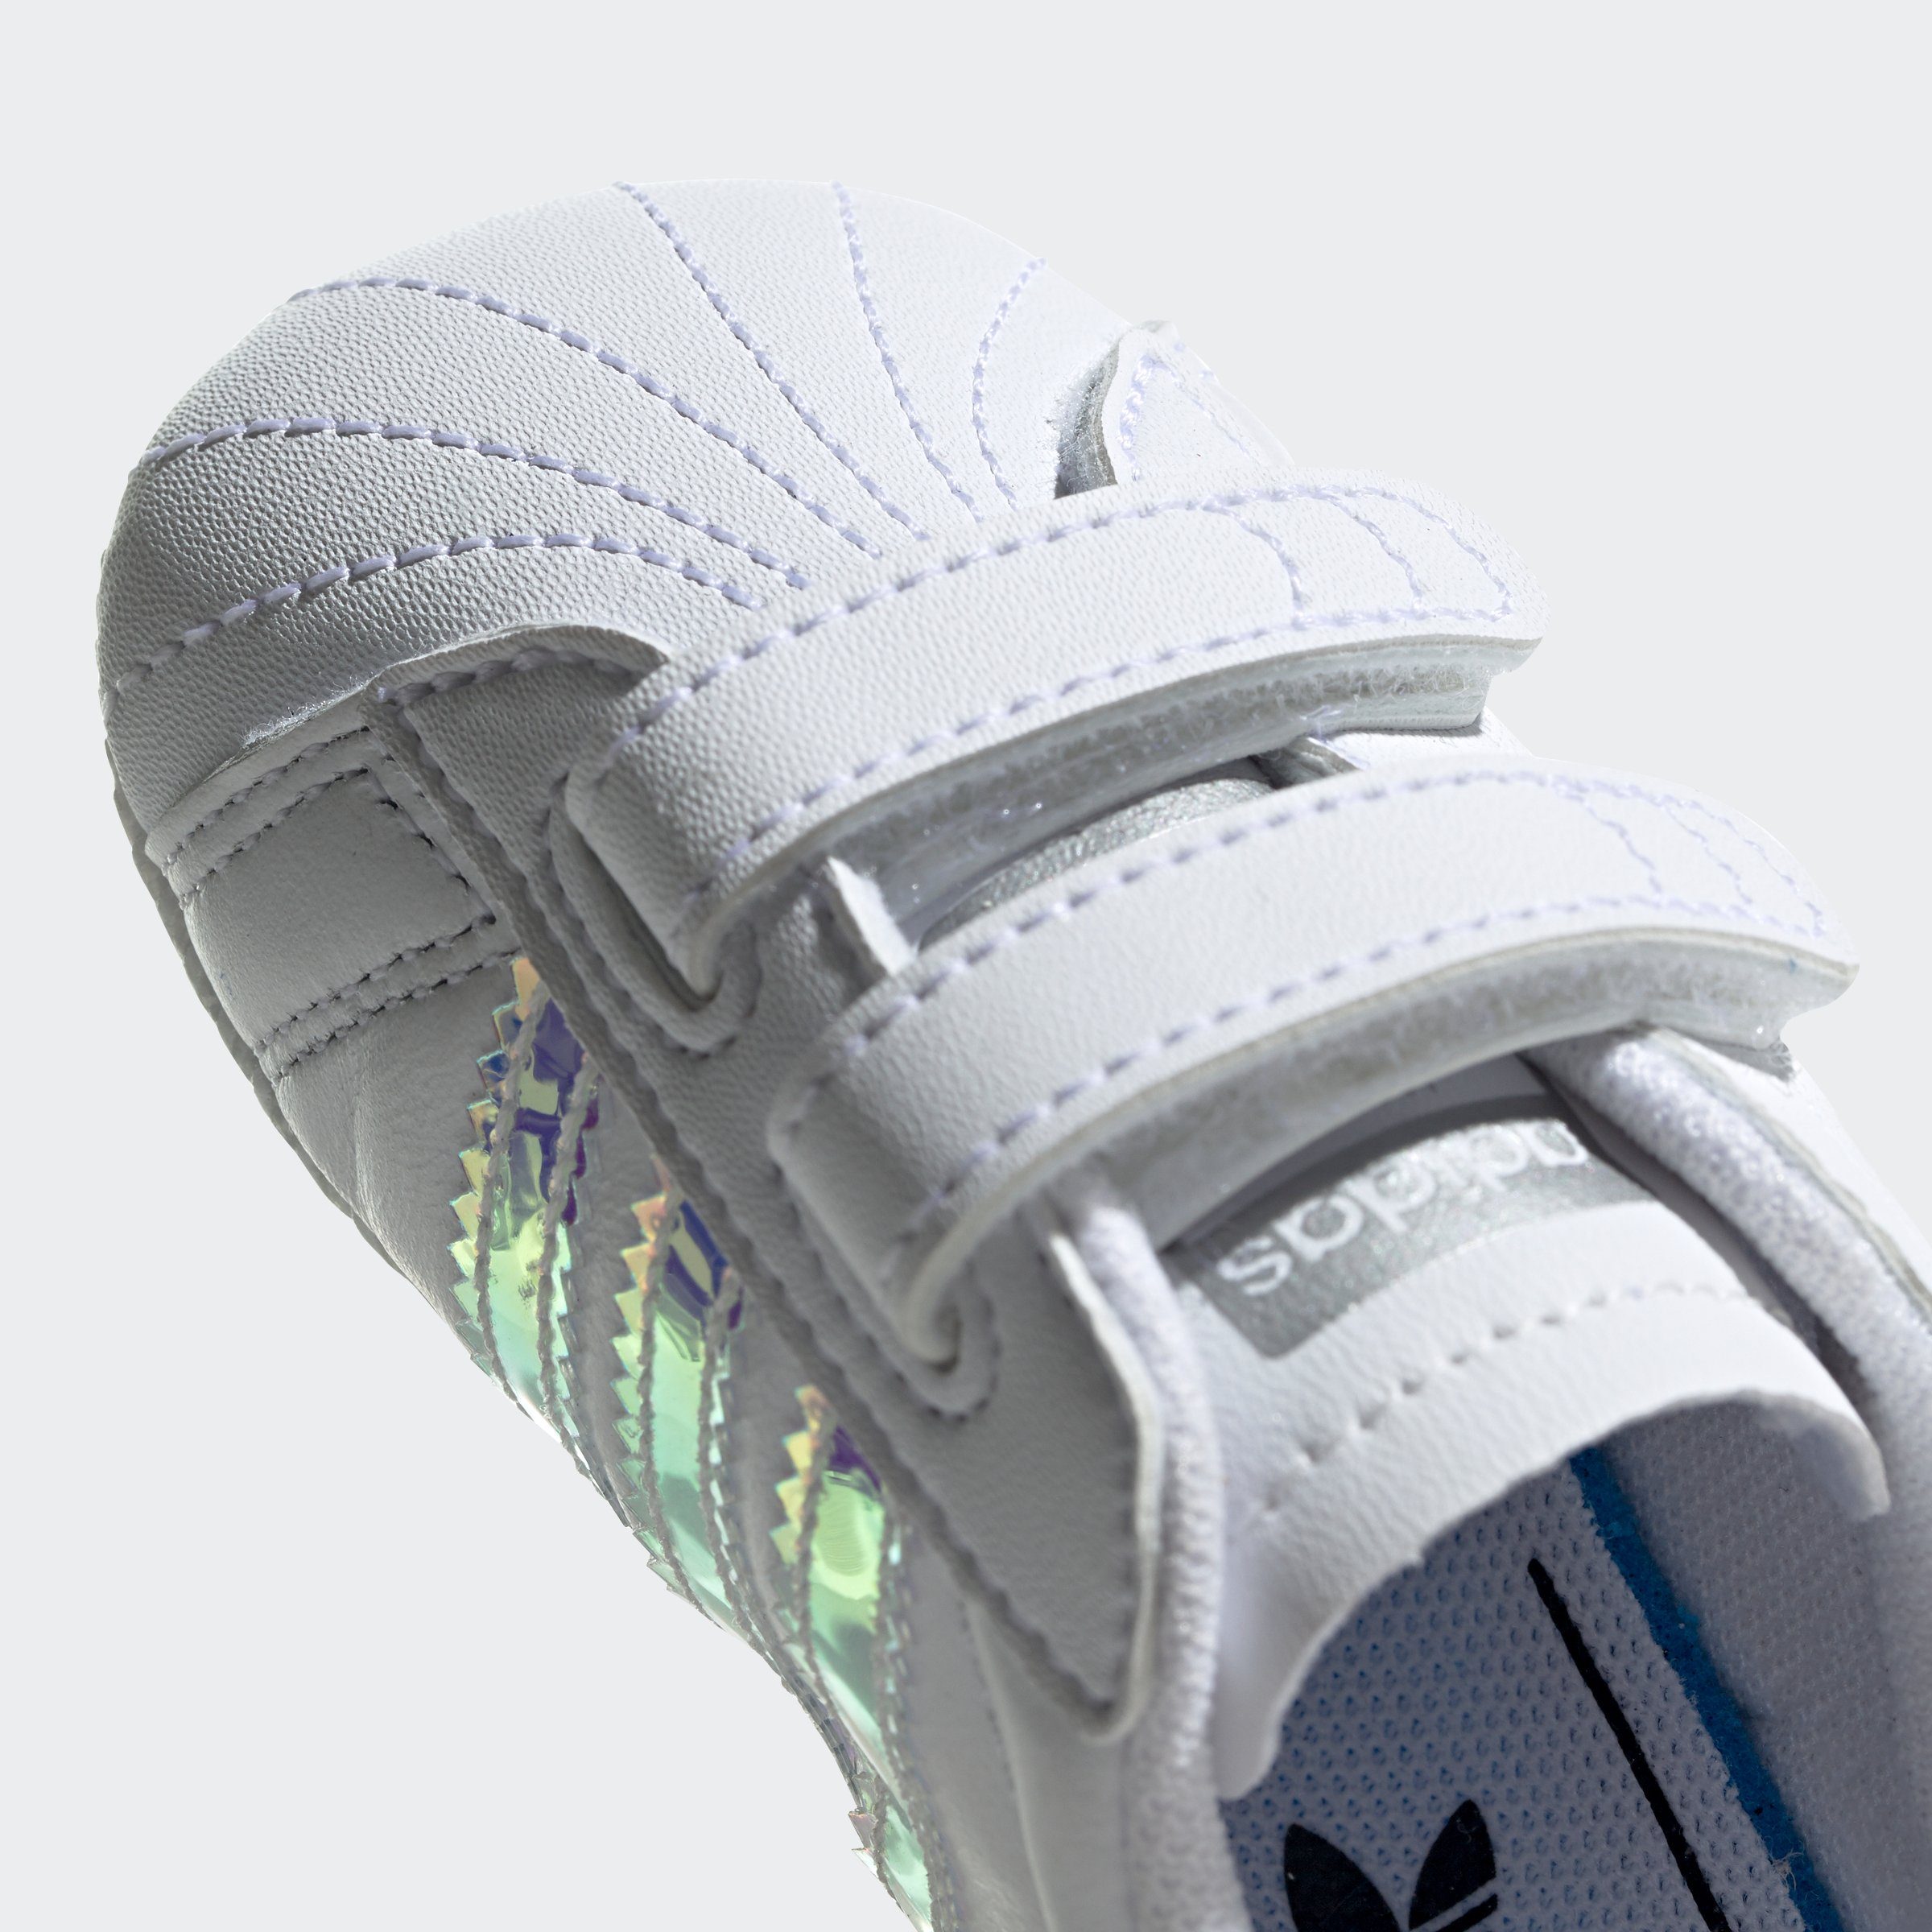 für Sneaker Babys mit adidas SUPERSTAR Originals Klettverschluss